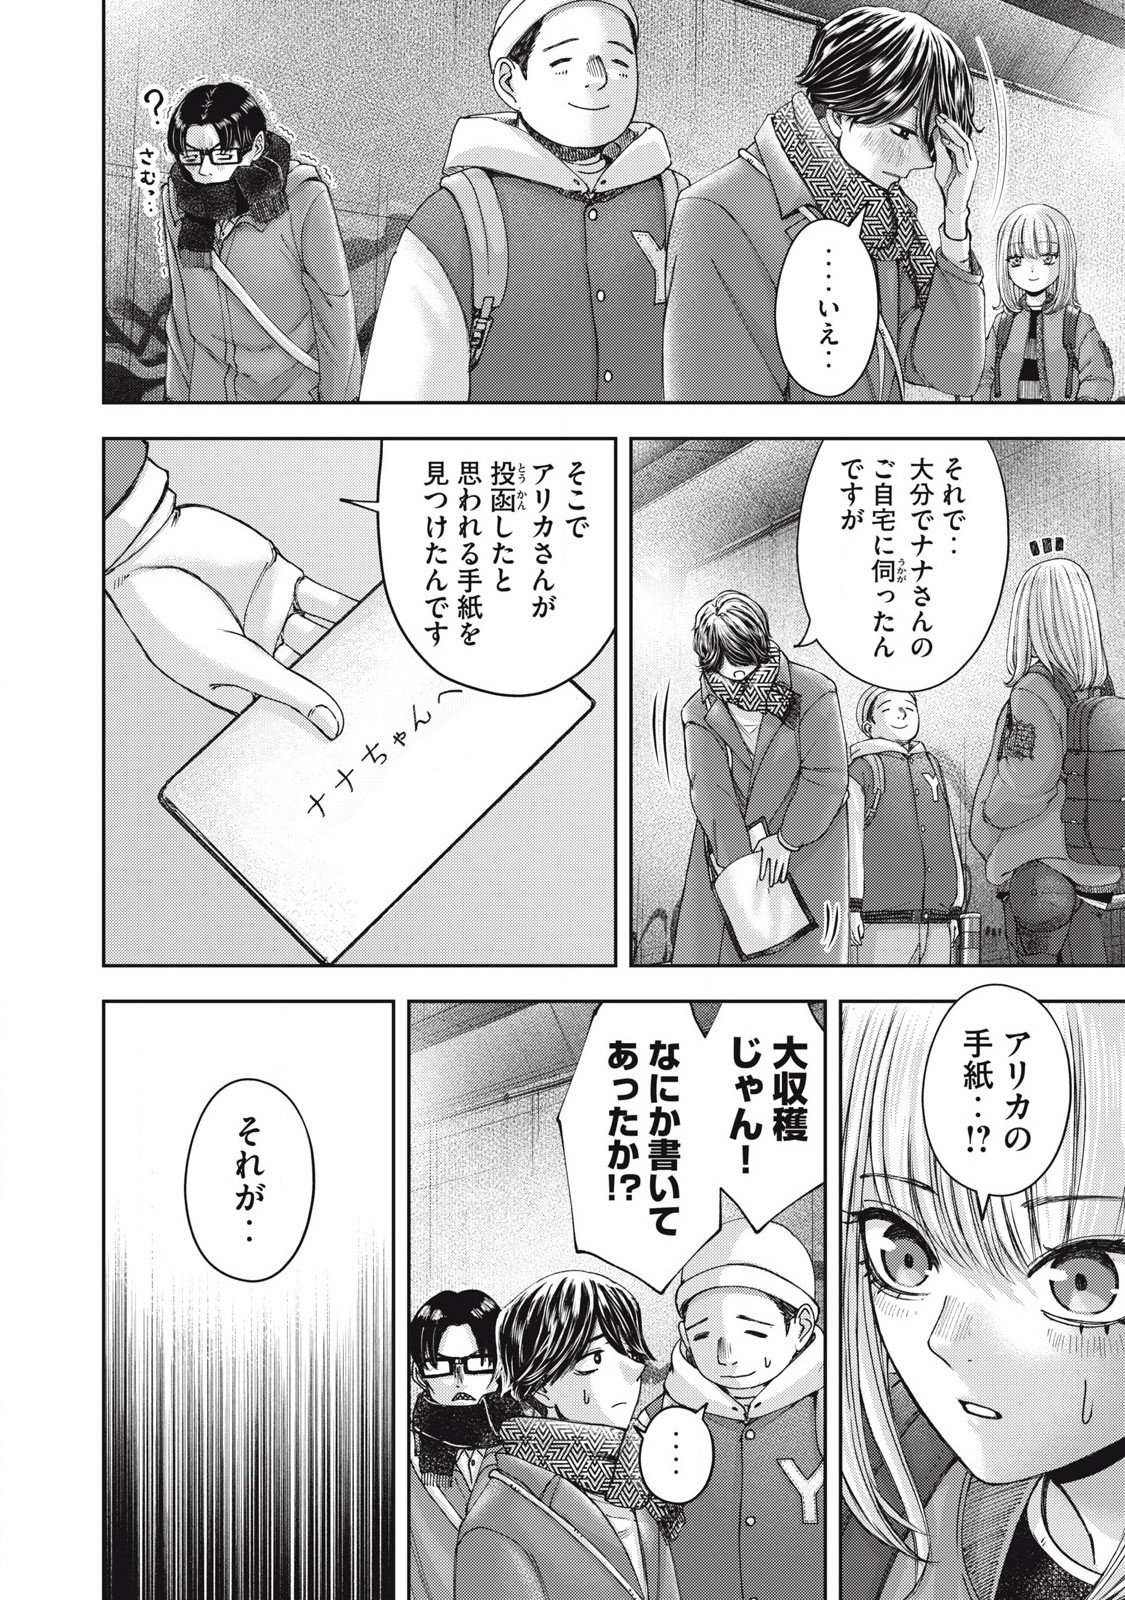 Watashi no Arika - Chapter 59 - Page 4